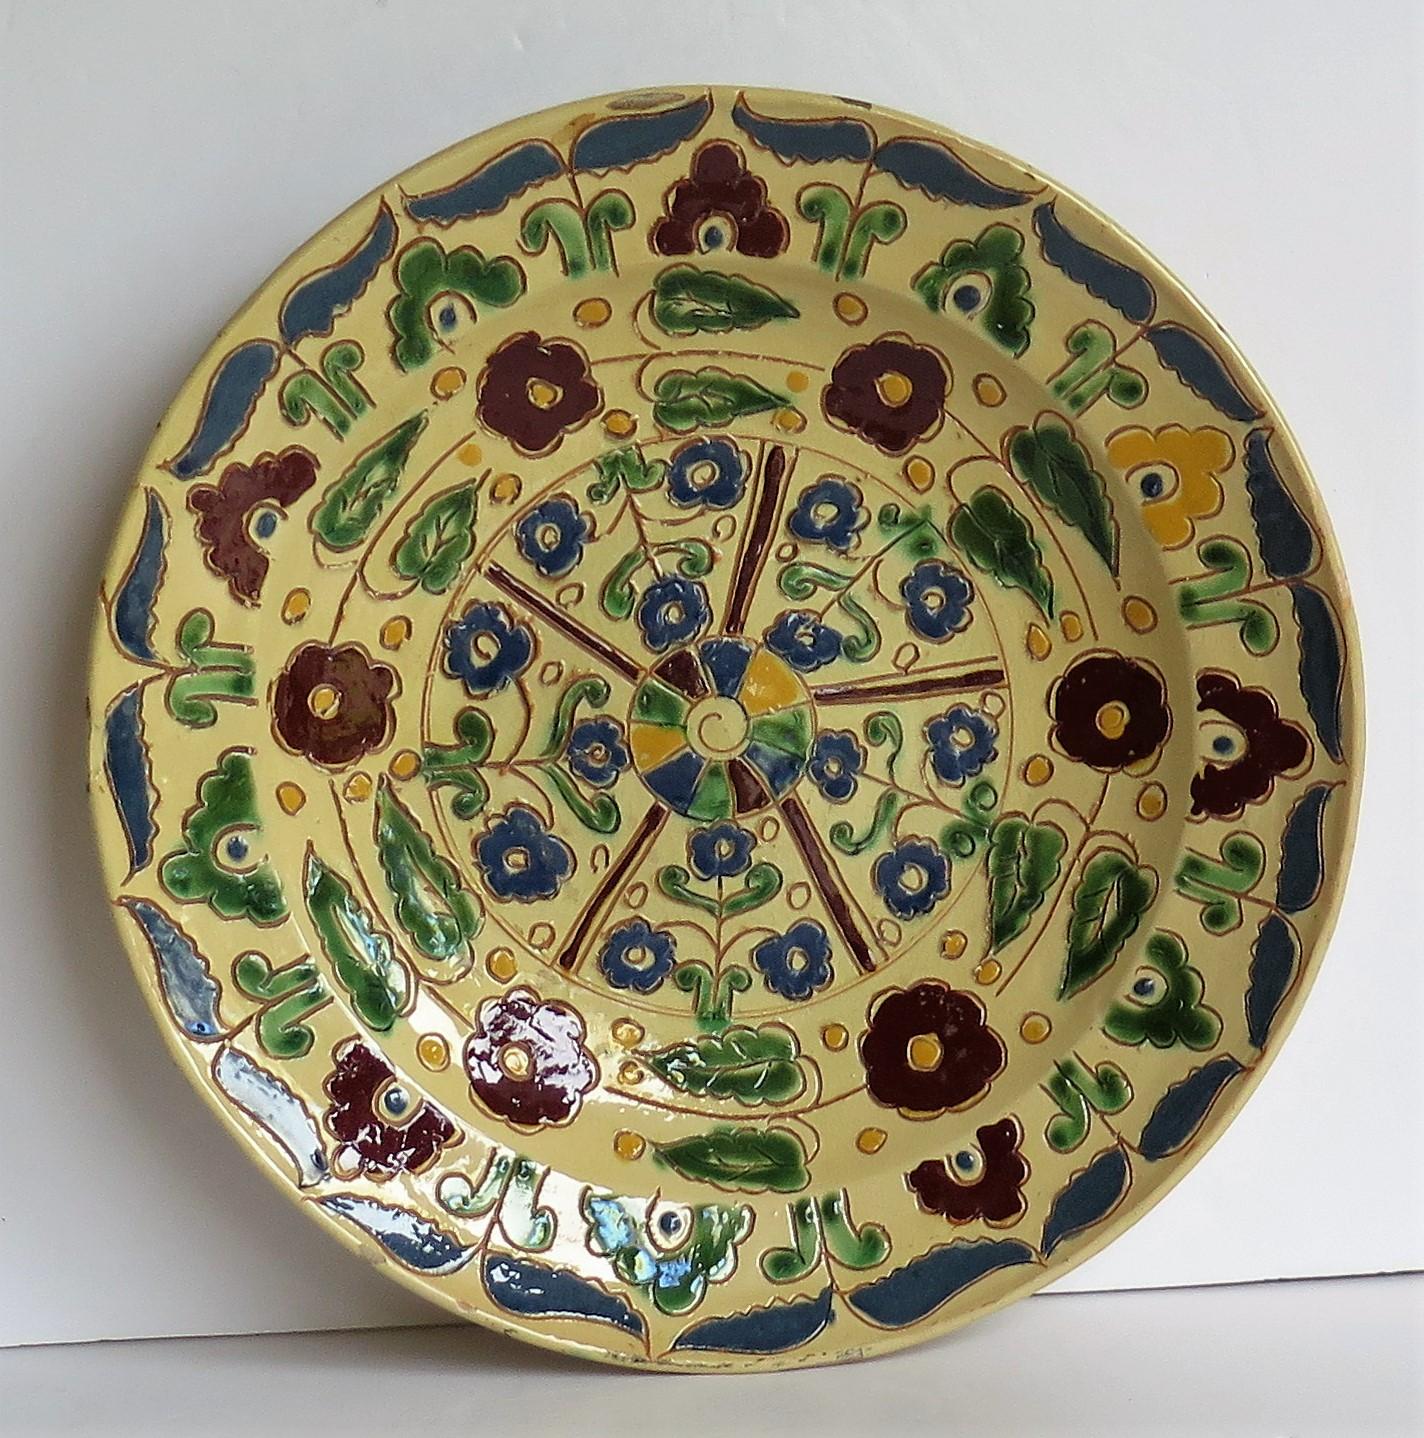 Grand plat de service en poterie Redware, entièrement décoré à la main selon la technique du Sgraffito Slip Decorated, avec un motif floral stylisé. 

Il s'agit d'une grande assiette/chargeur ou d'un plat de 11,75 pouces de diamètre reposant sur un